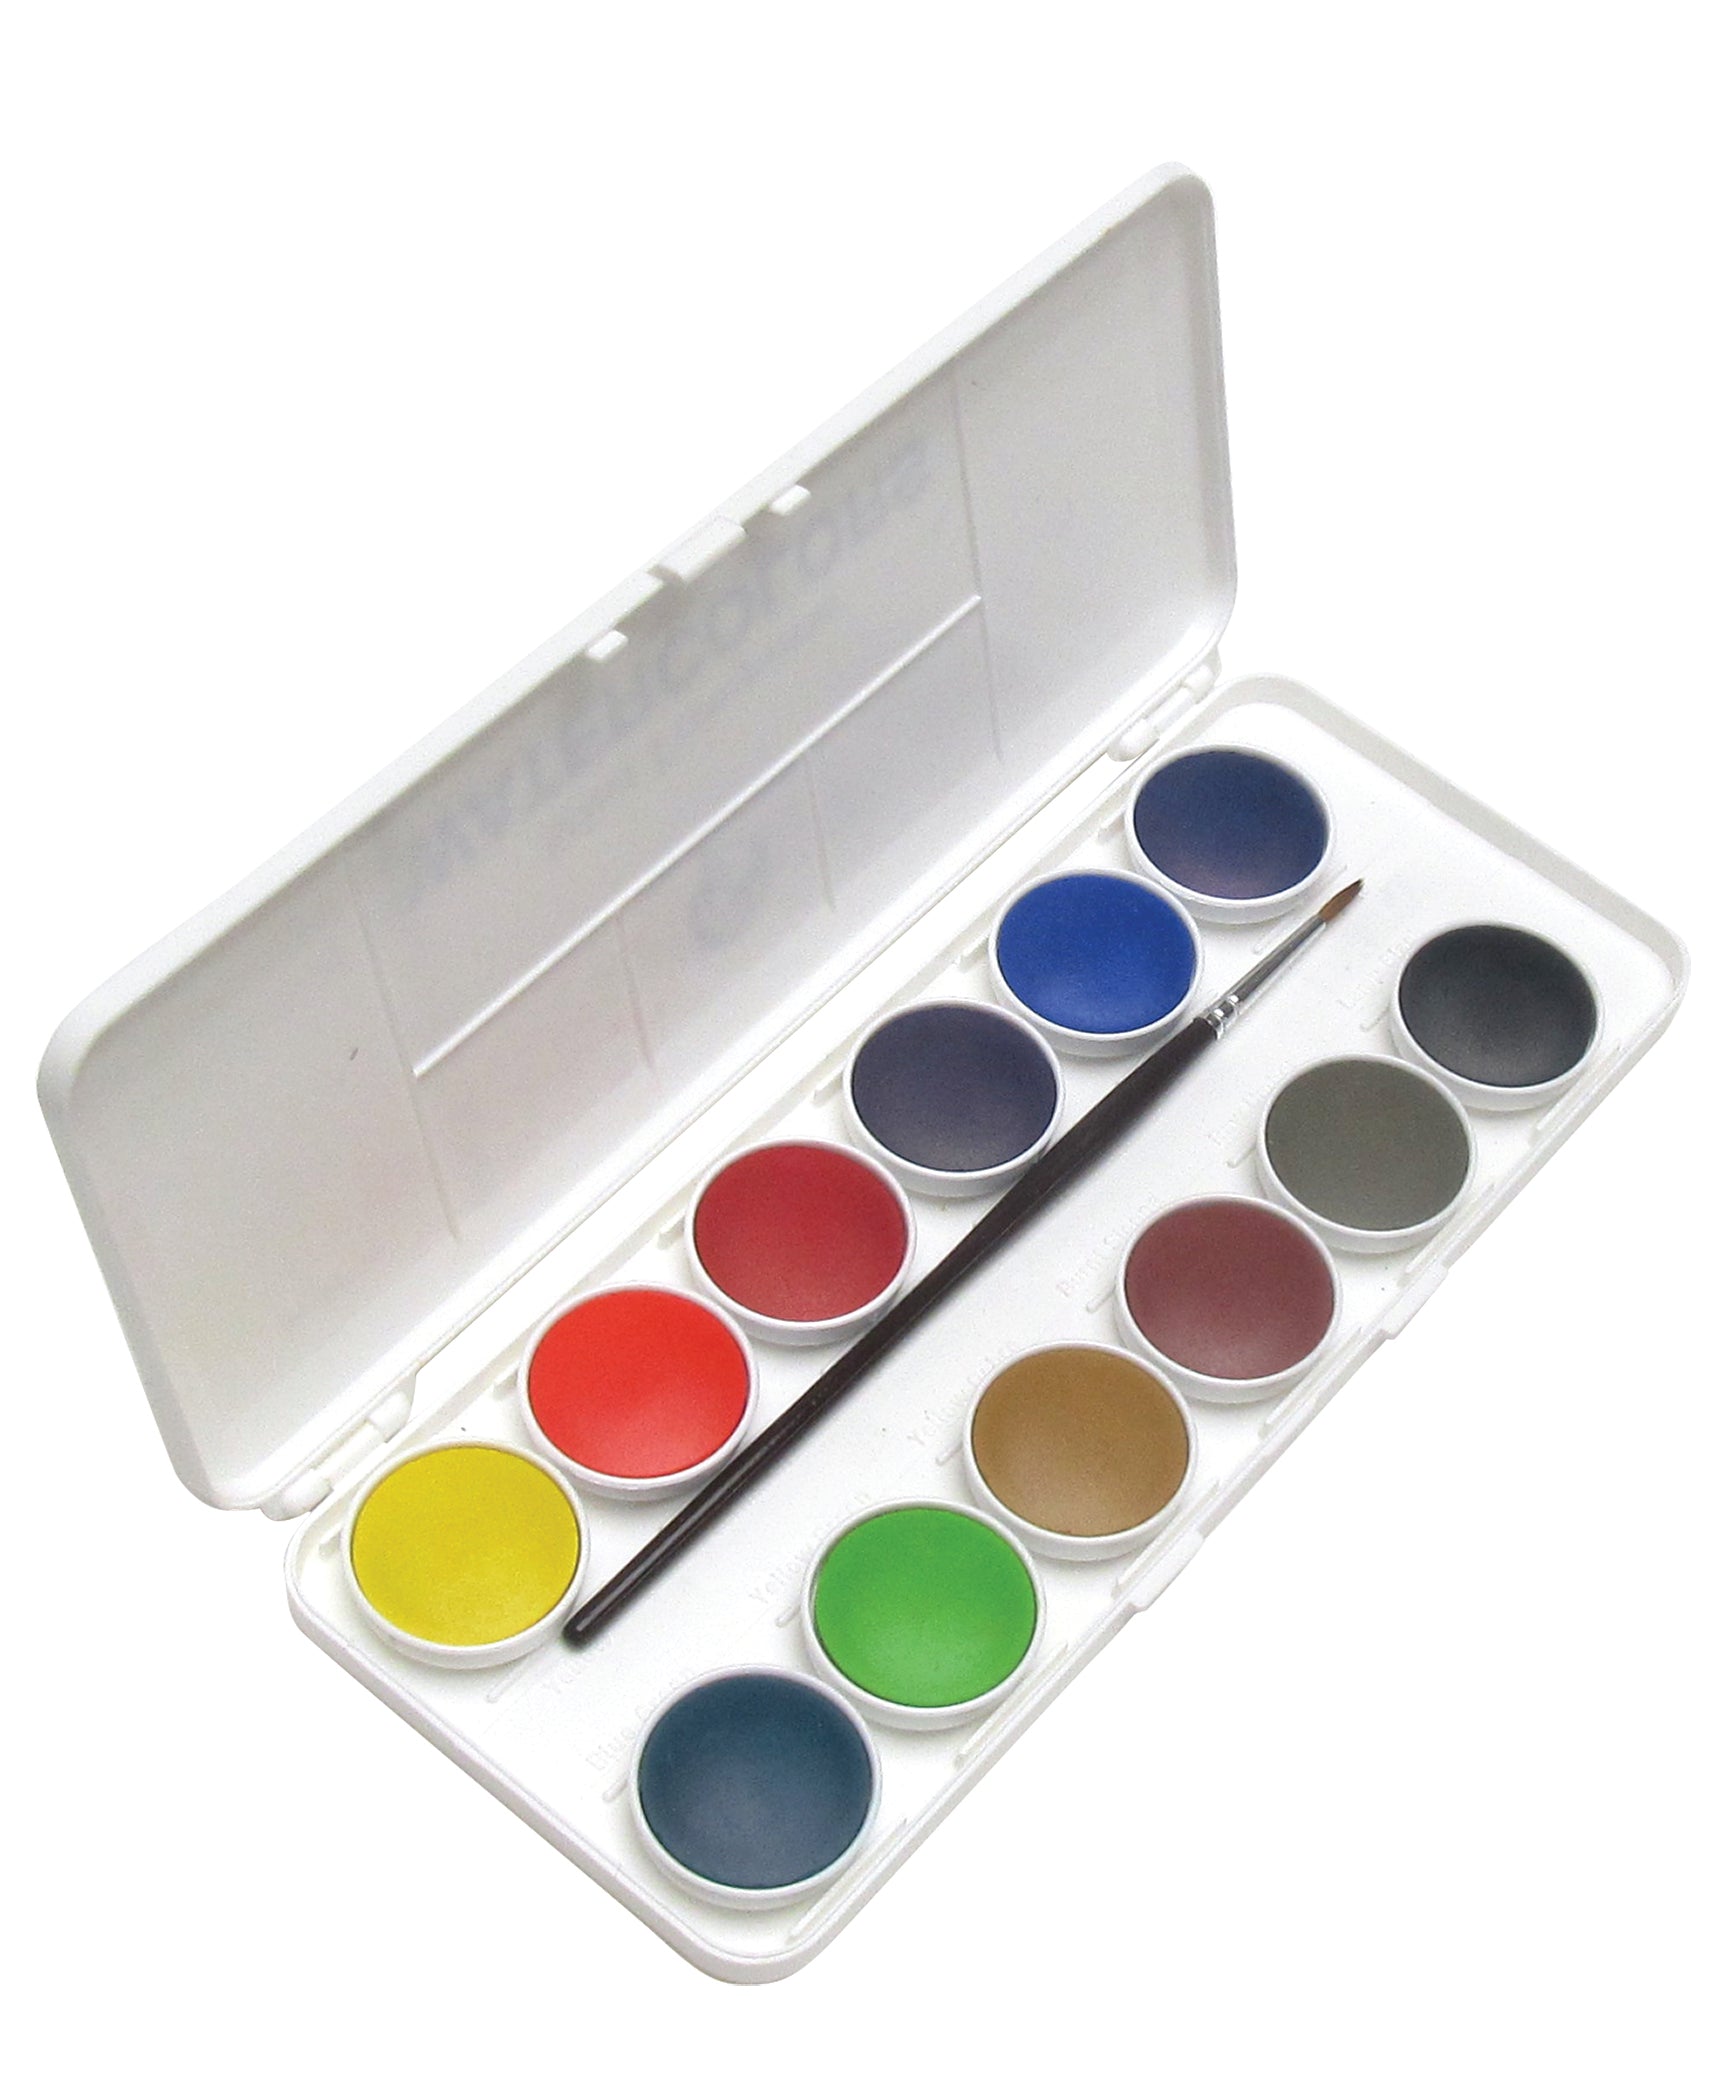 Watercolor Paint Set, 21ml Tubes - 12 Colors